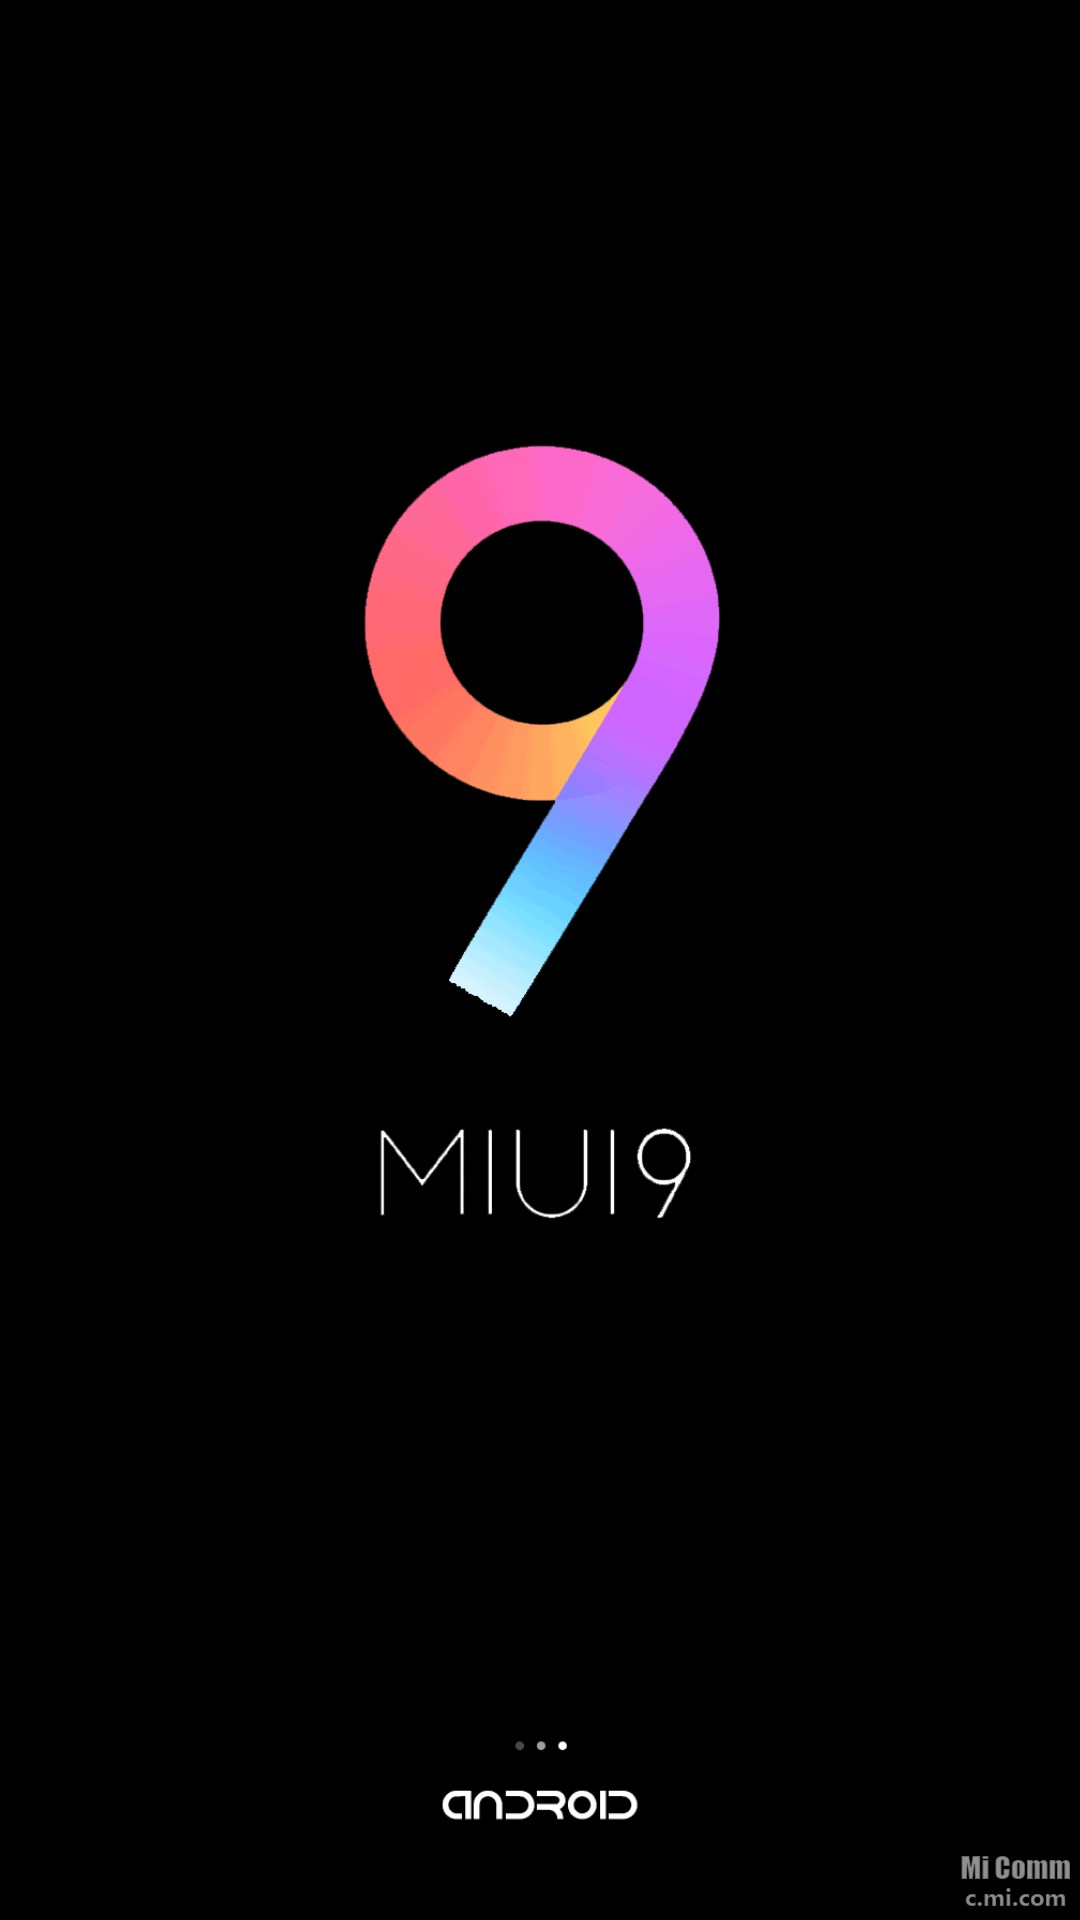 Телефон miui 9. MIUI логотип. Надпись MIUI. Логотип смартфона Ксиаоми. Логотип редми 9.